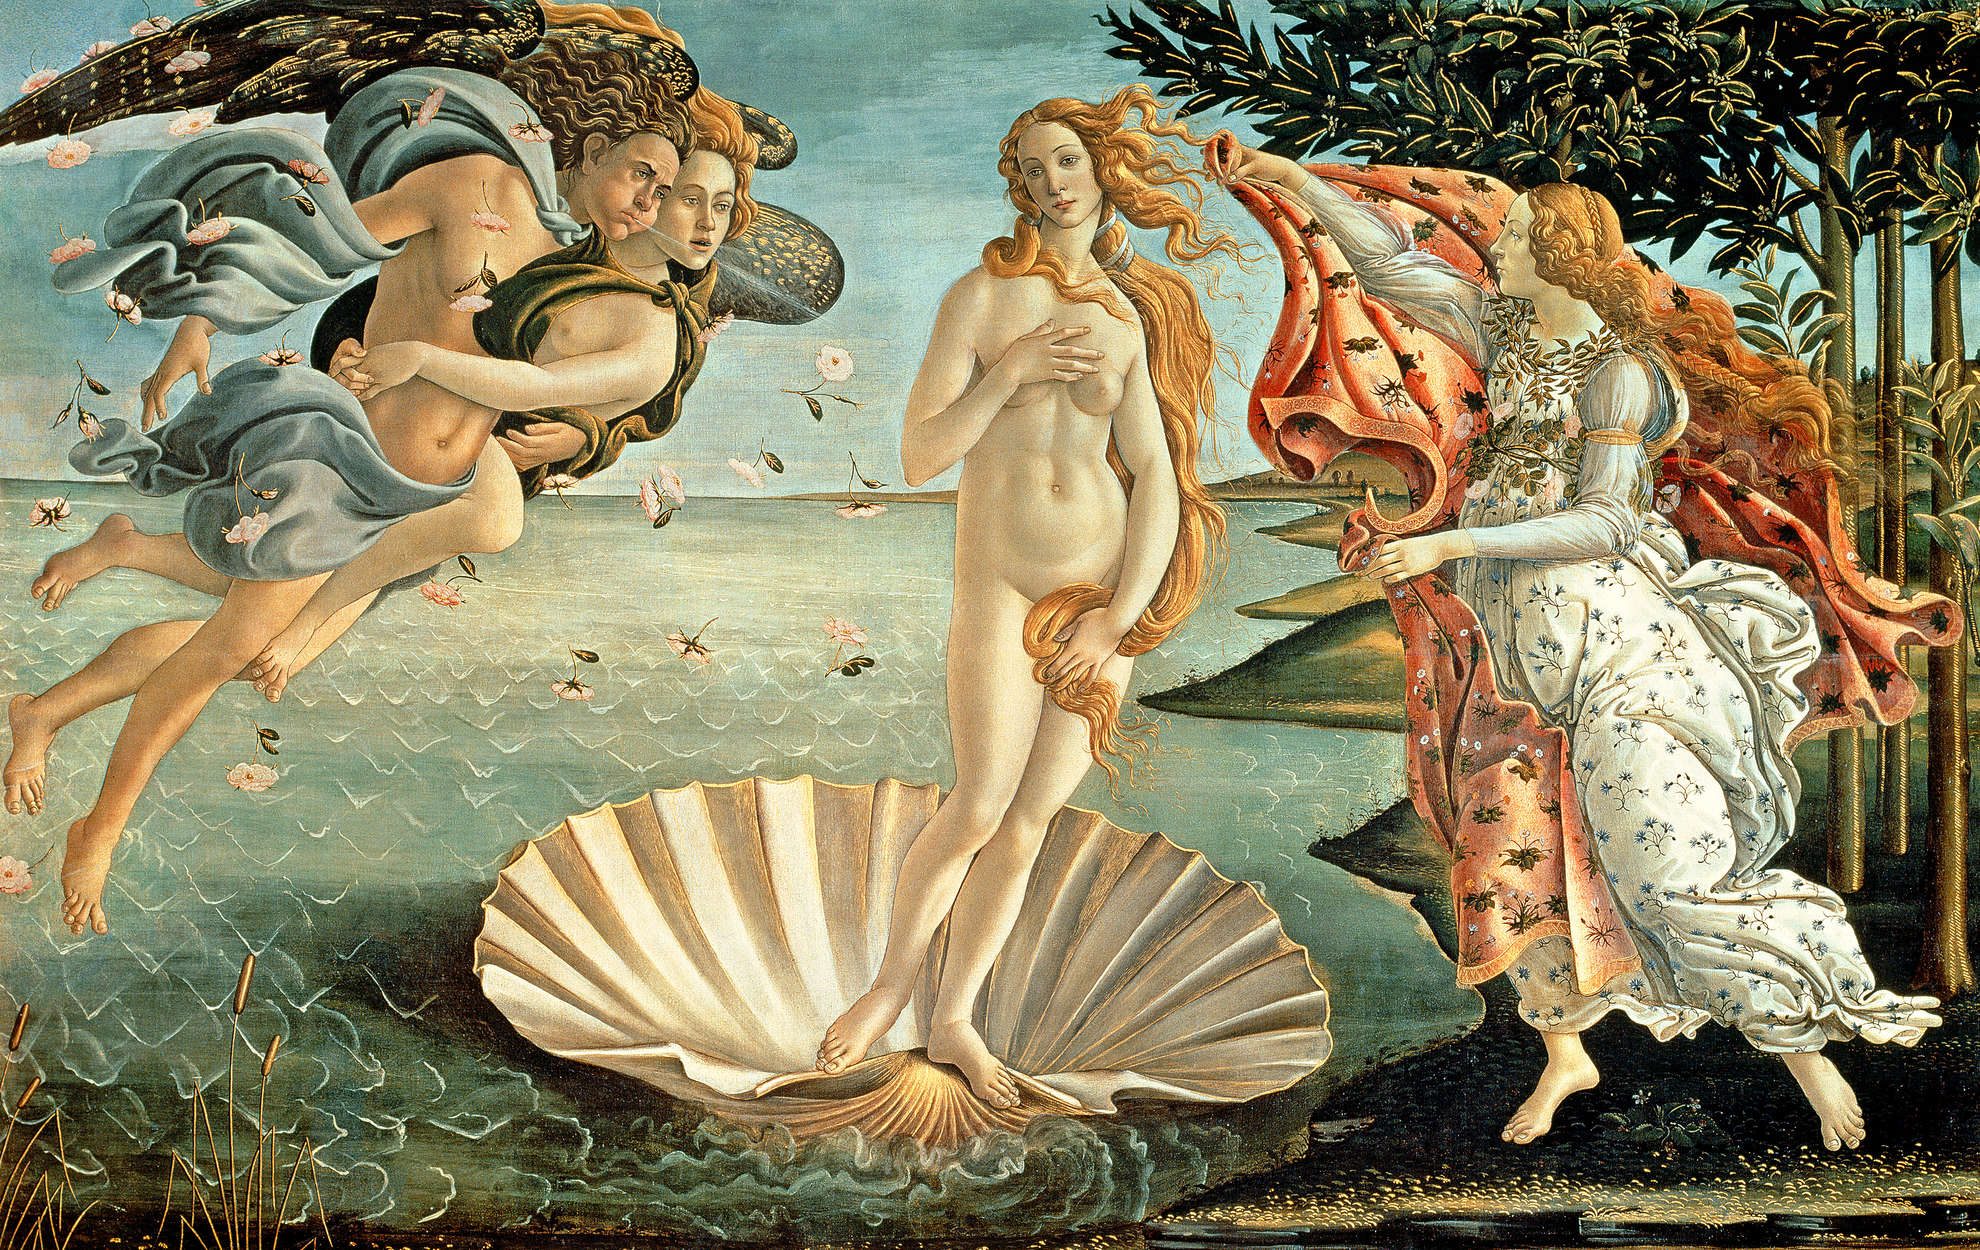             De geboorte van Venus" muurschildering van Sandro Botticelli
        